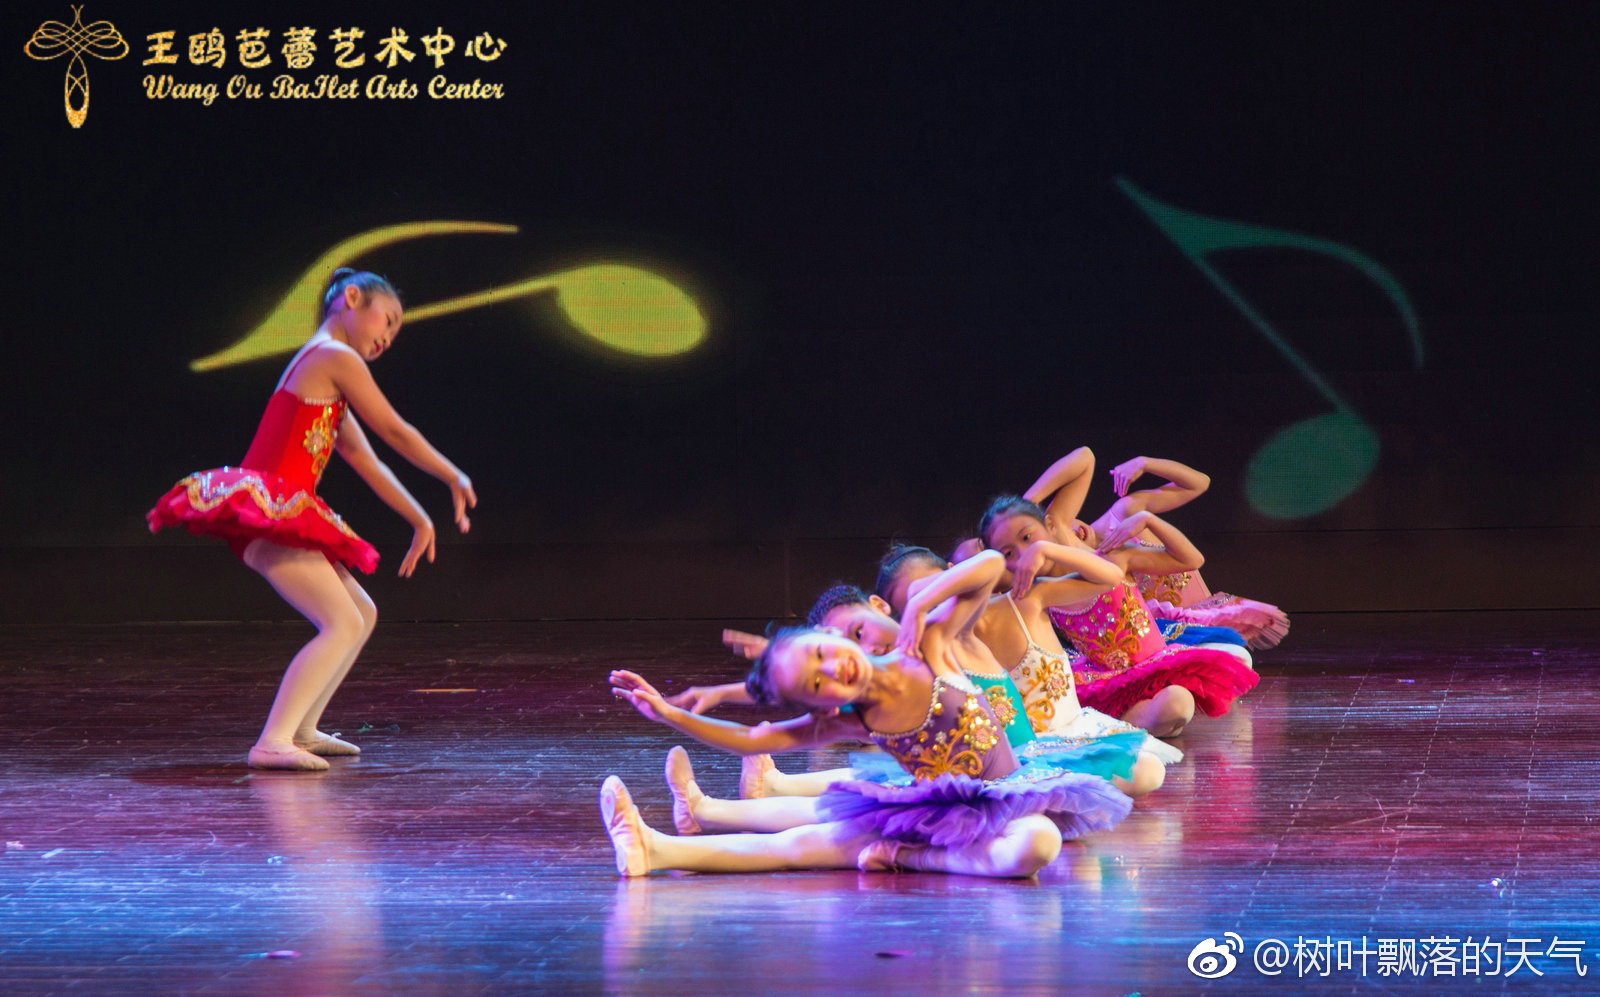 分享图片2018年元旦,桂林王鸥芭蕾艺术中心的